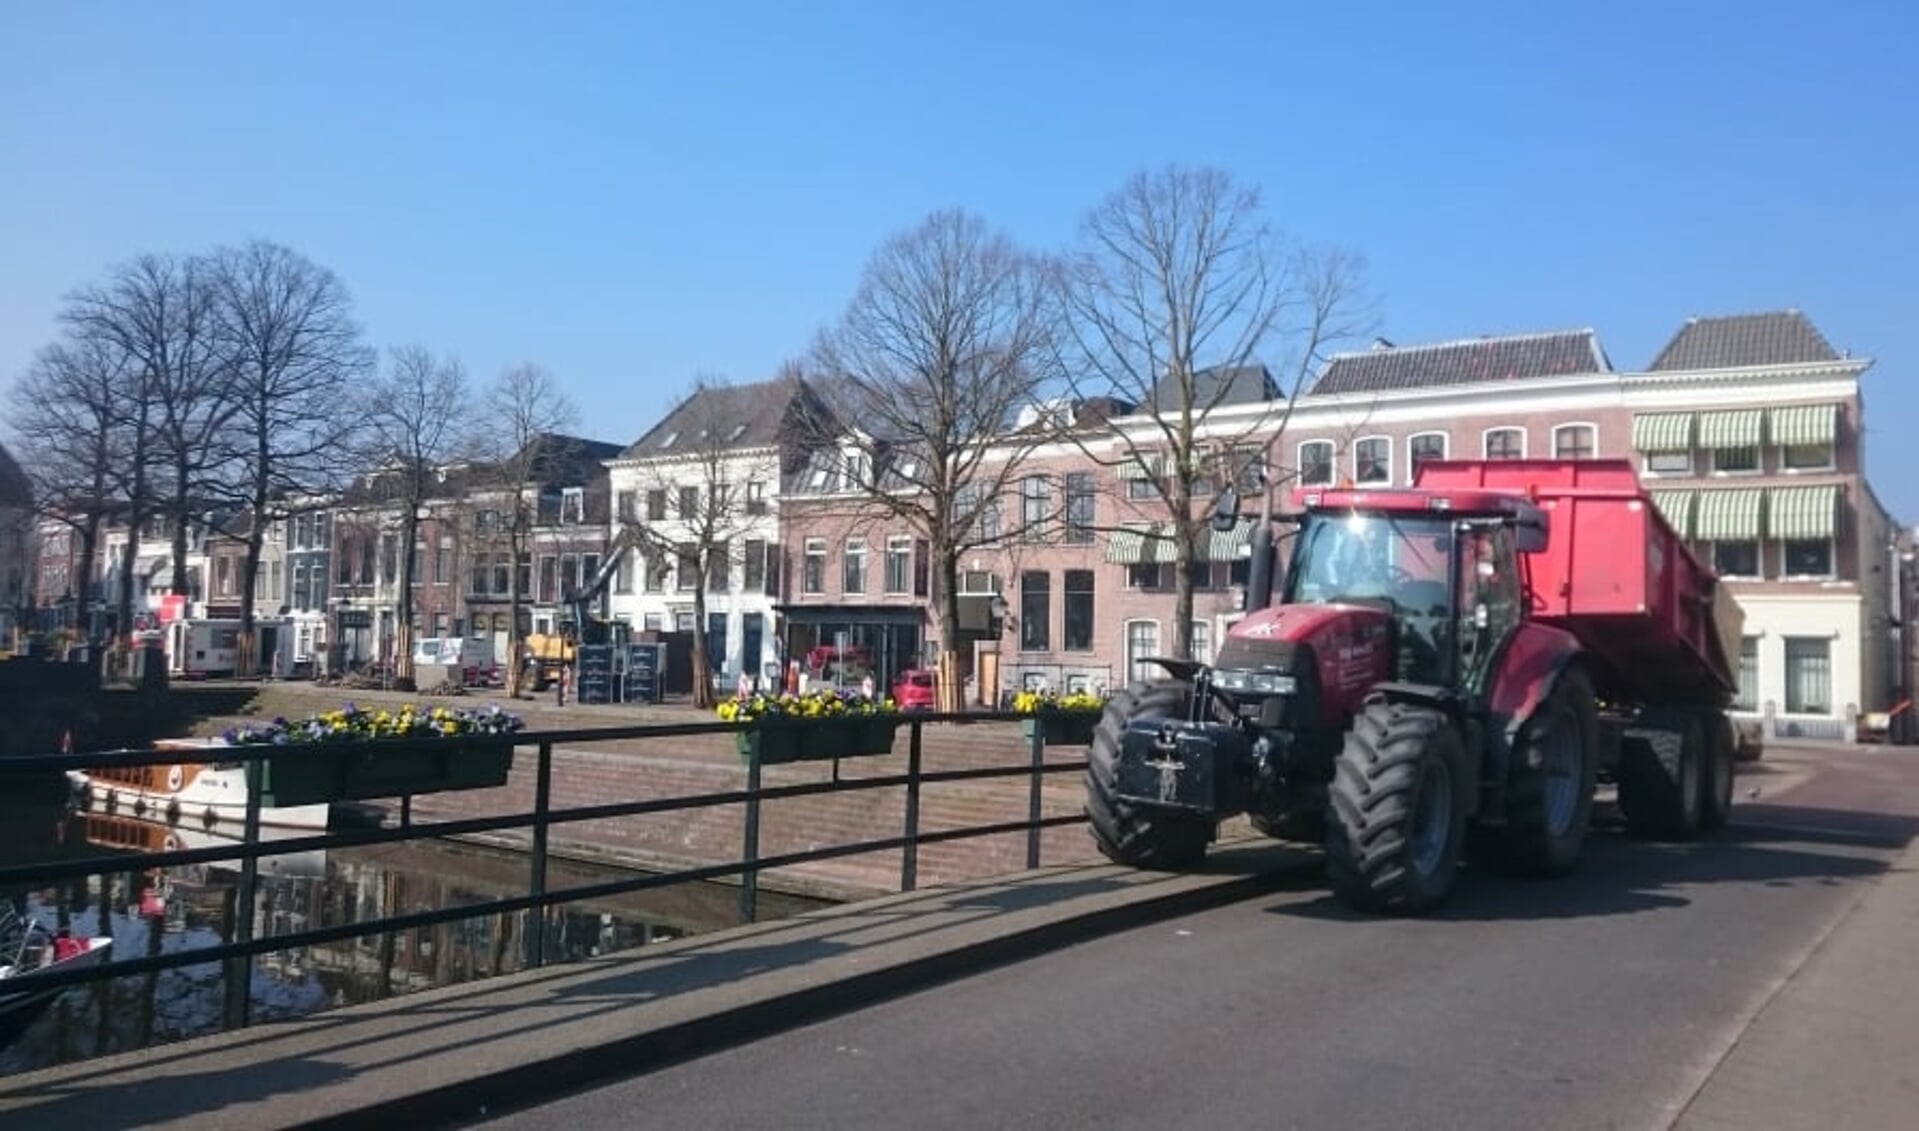 Blokkades van omgeving Eind zijn slechts incidenteel het geval blijkt uit onderzoek van De Stad Gorinchem. 